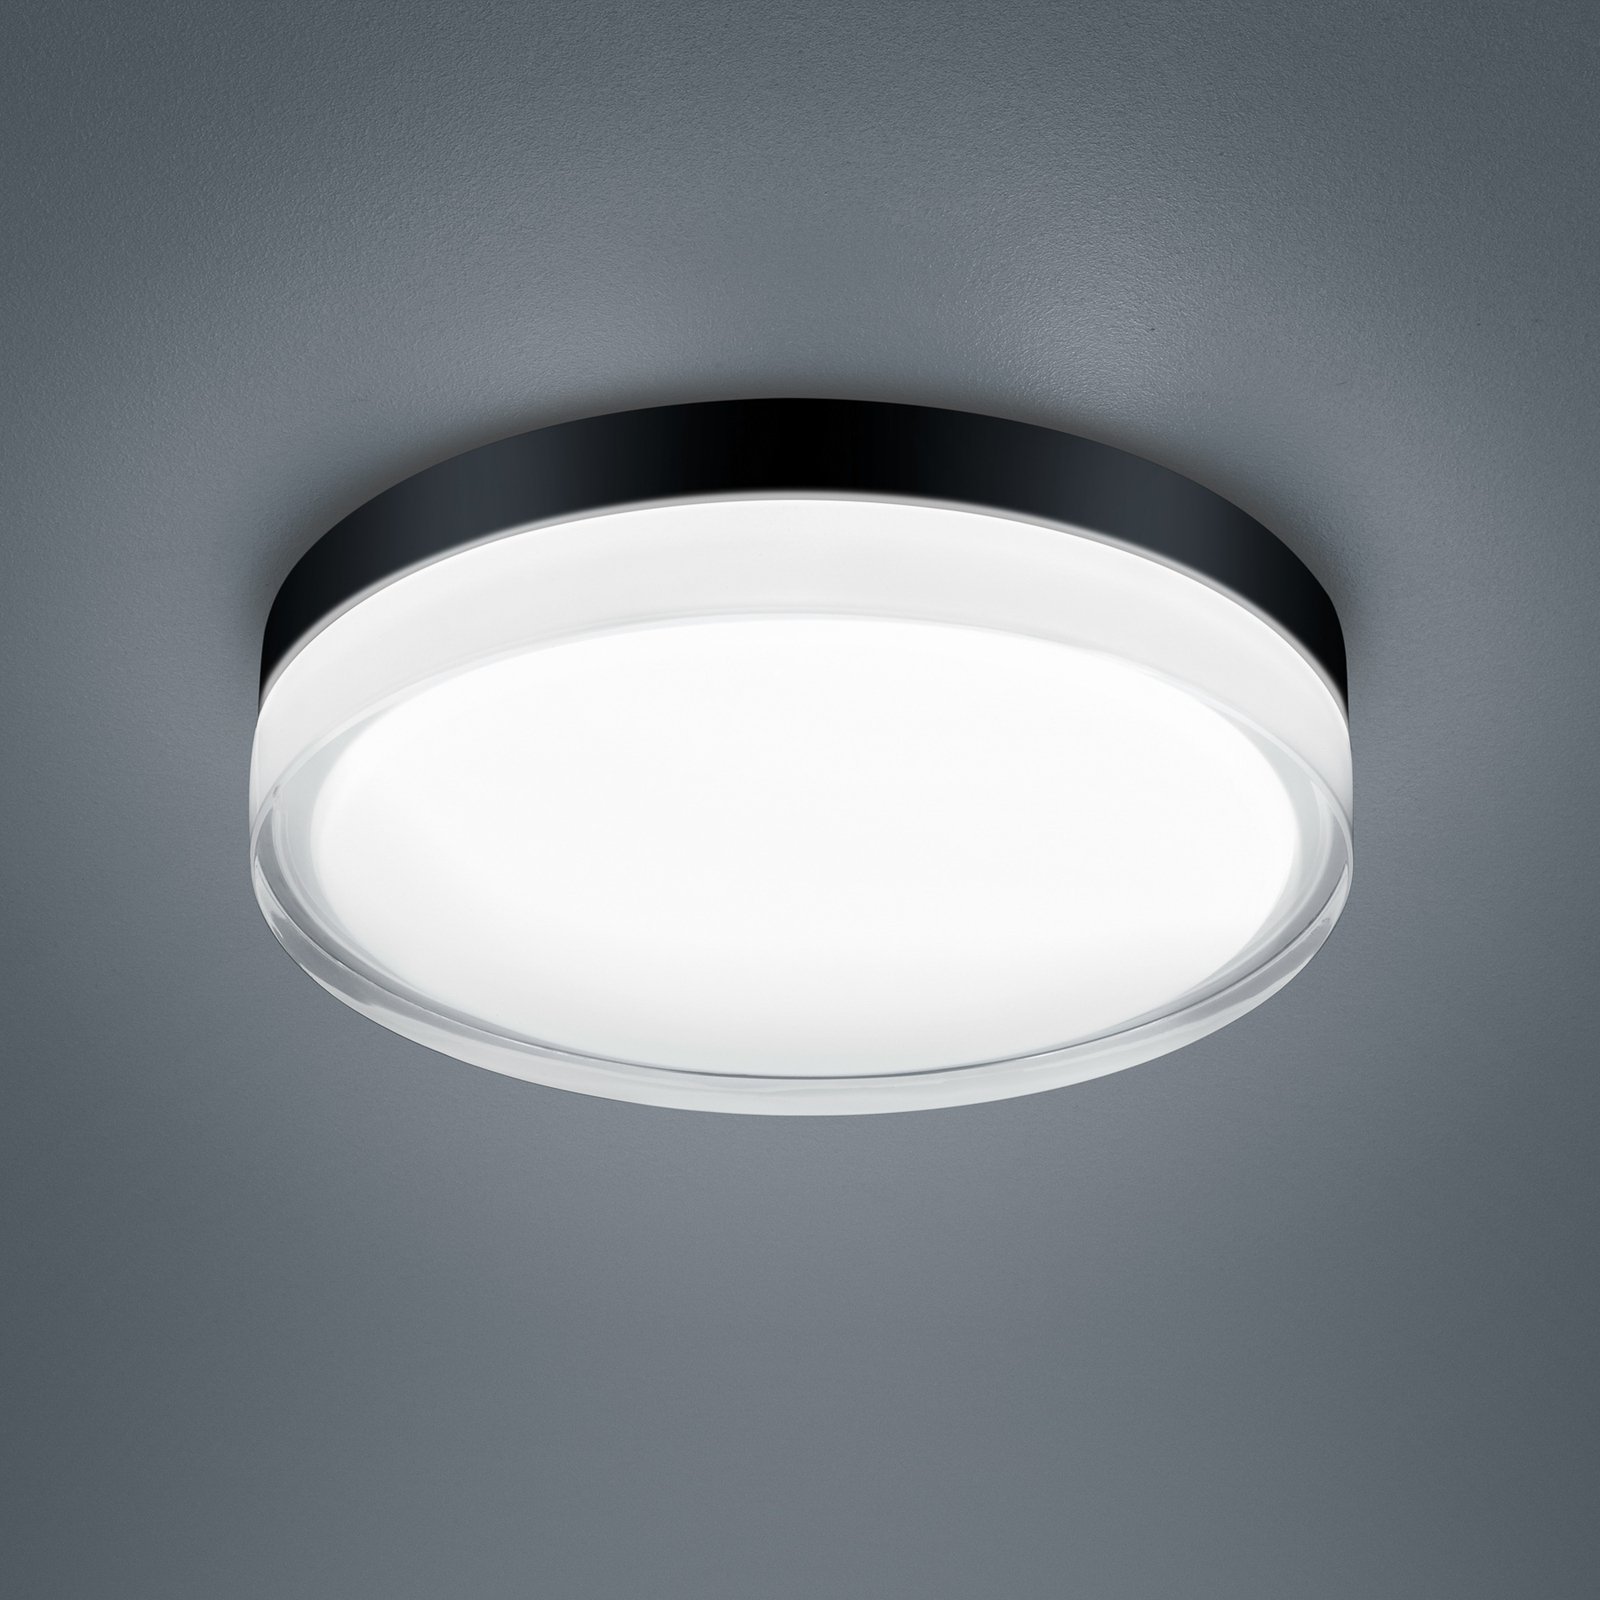 Helestra Tana LED-taklampe, svart, Ø 28 cm